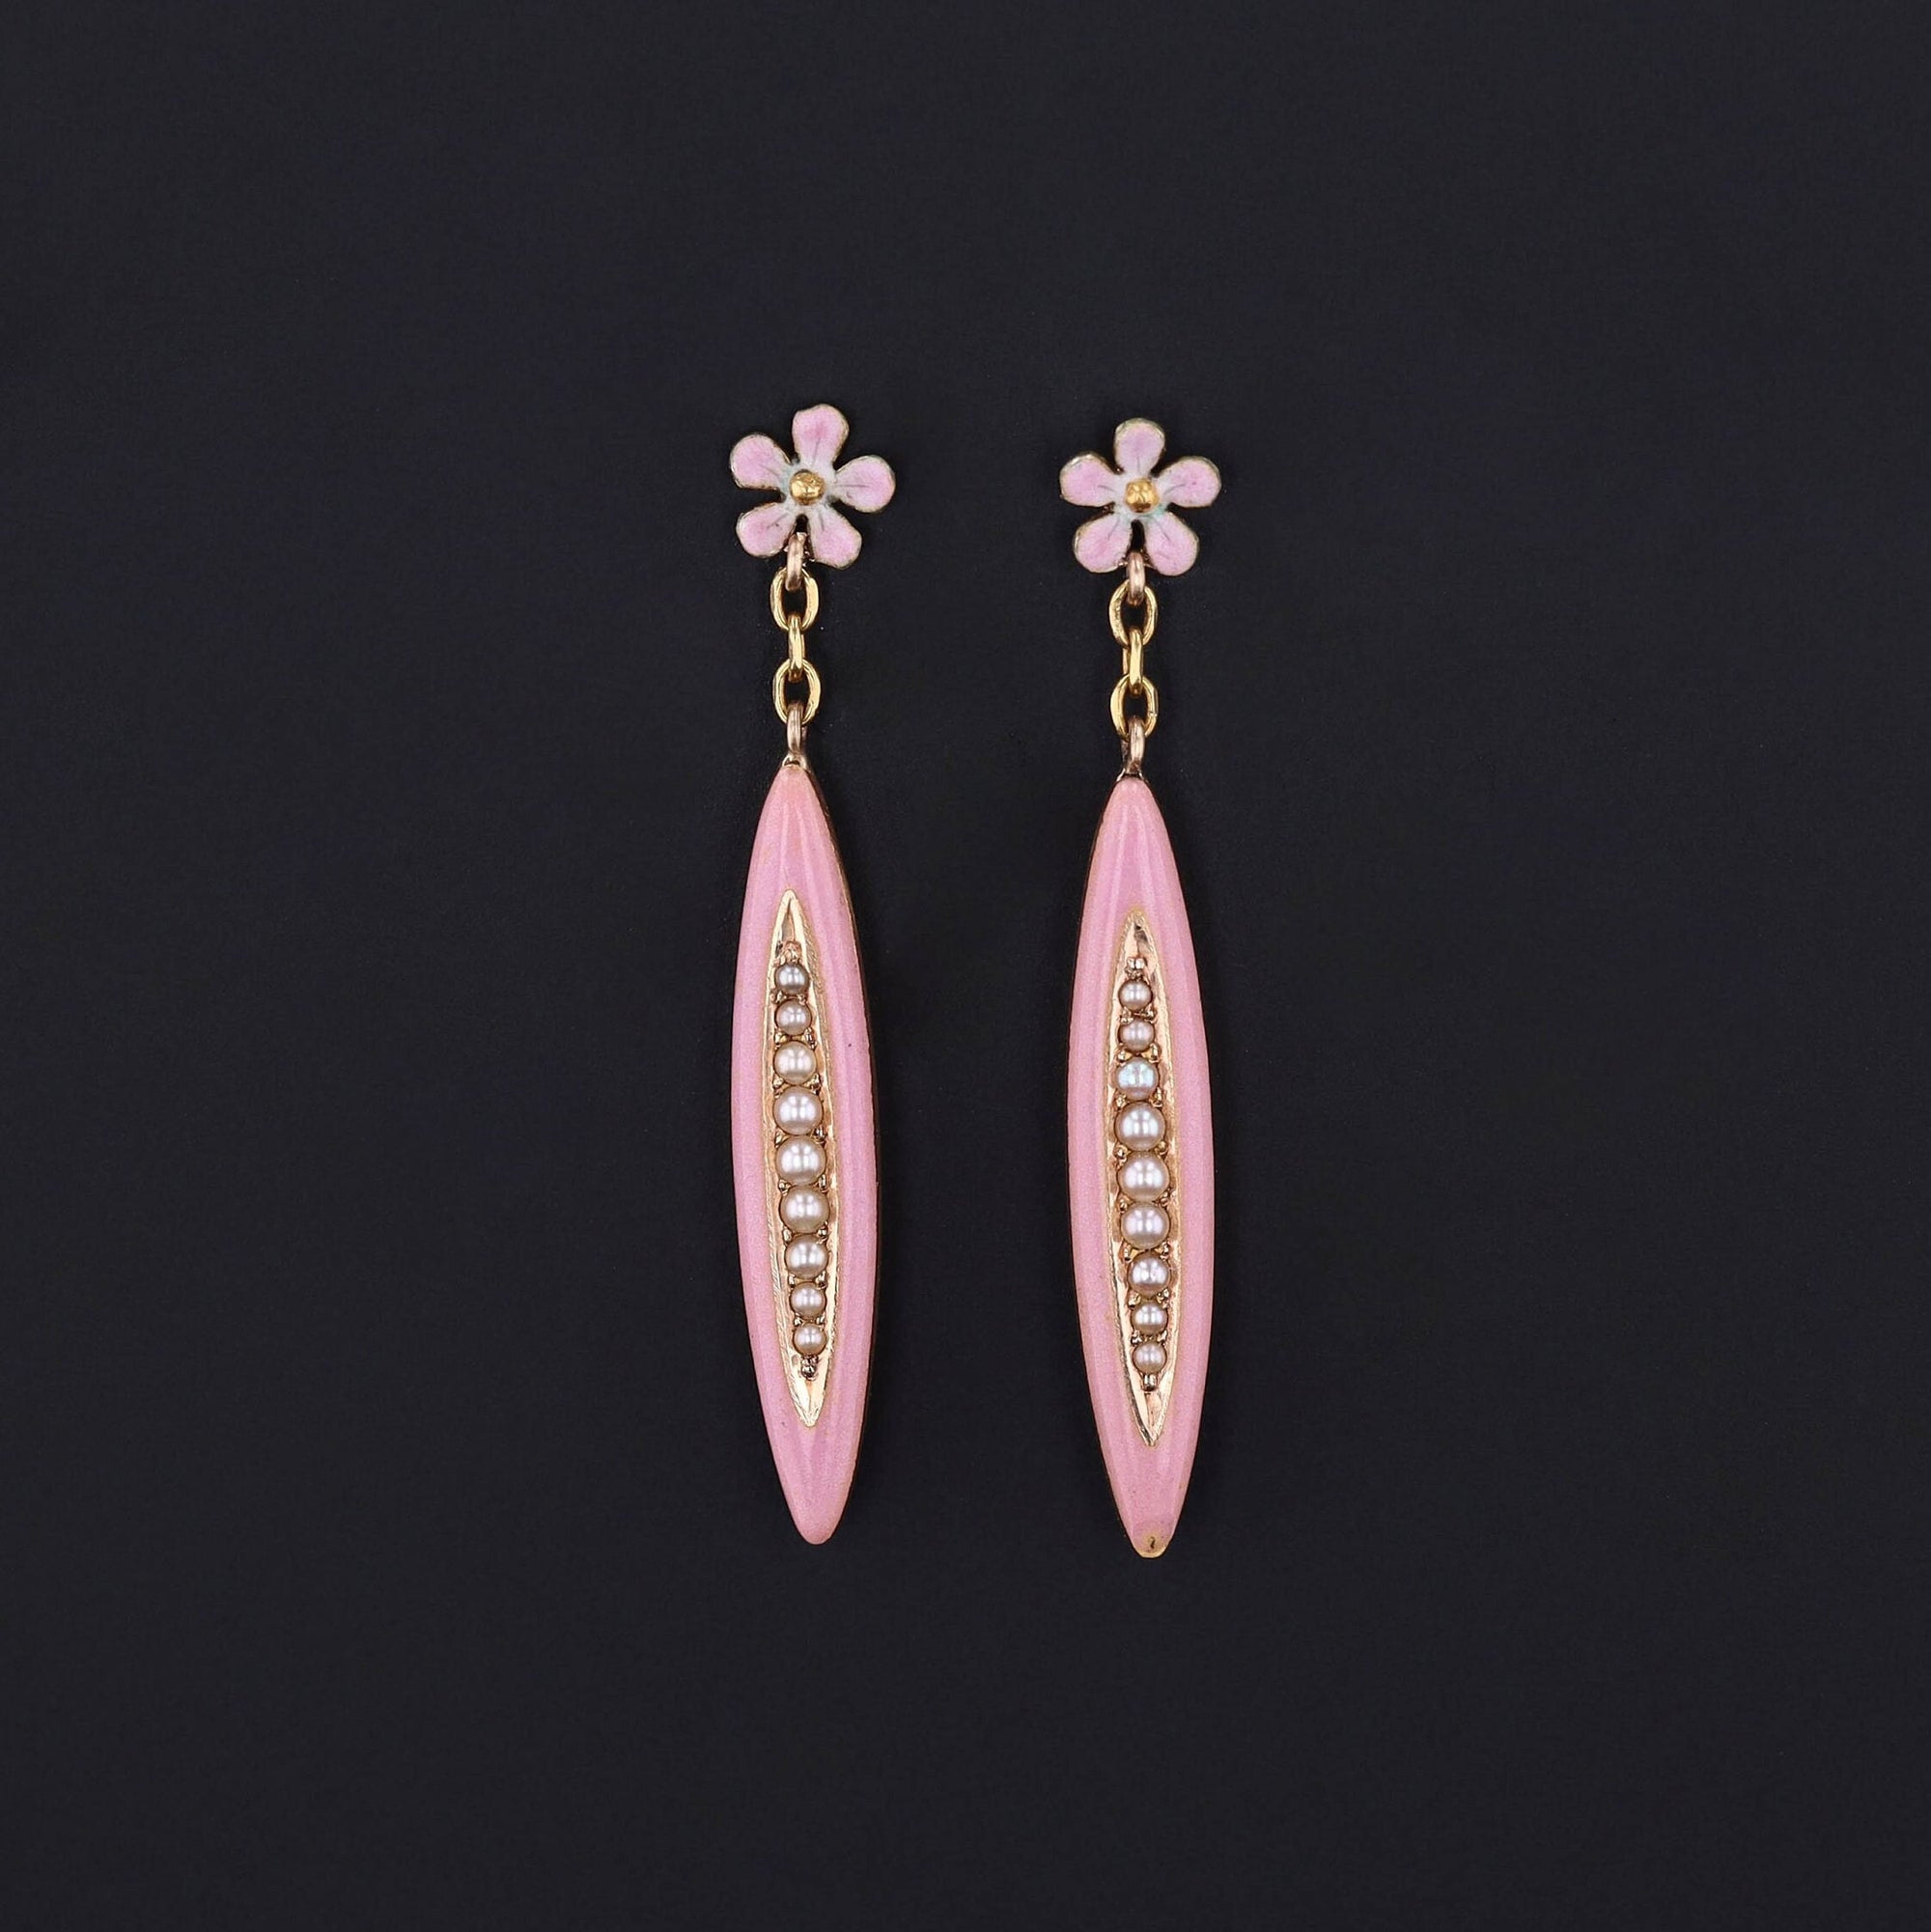 Pin Flower Earrings | 14k Gold, Enamel & Pearl Earrings 